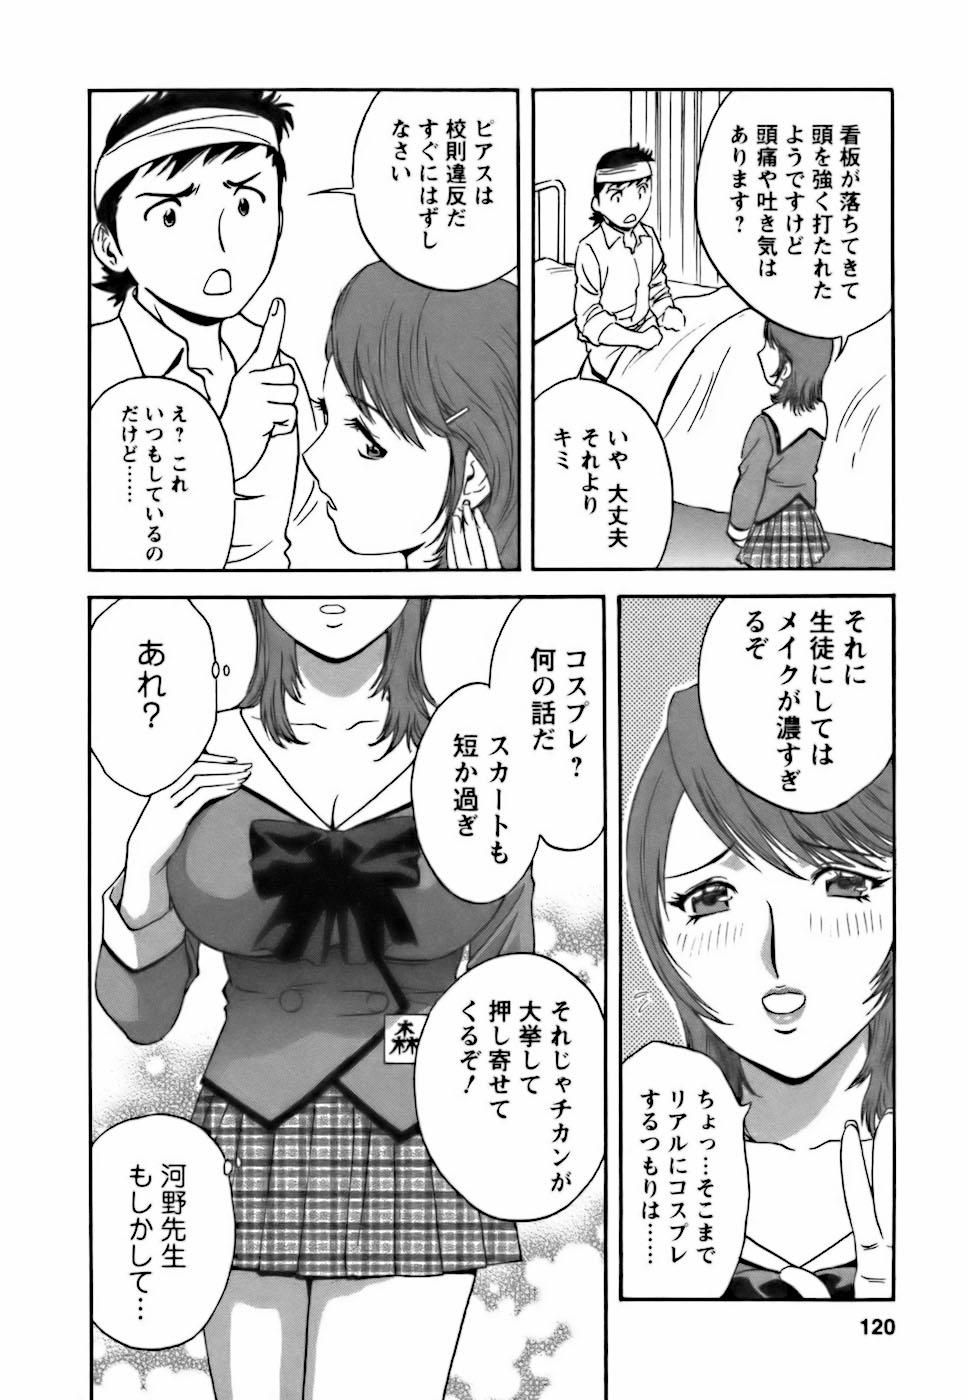 [Hidemaru] Mo-Retsu! Boin Sensei (Boing Boing Teacher) Vol.3 115